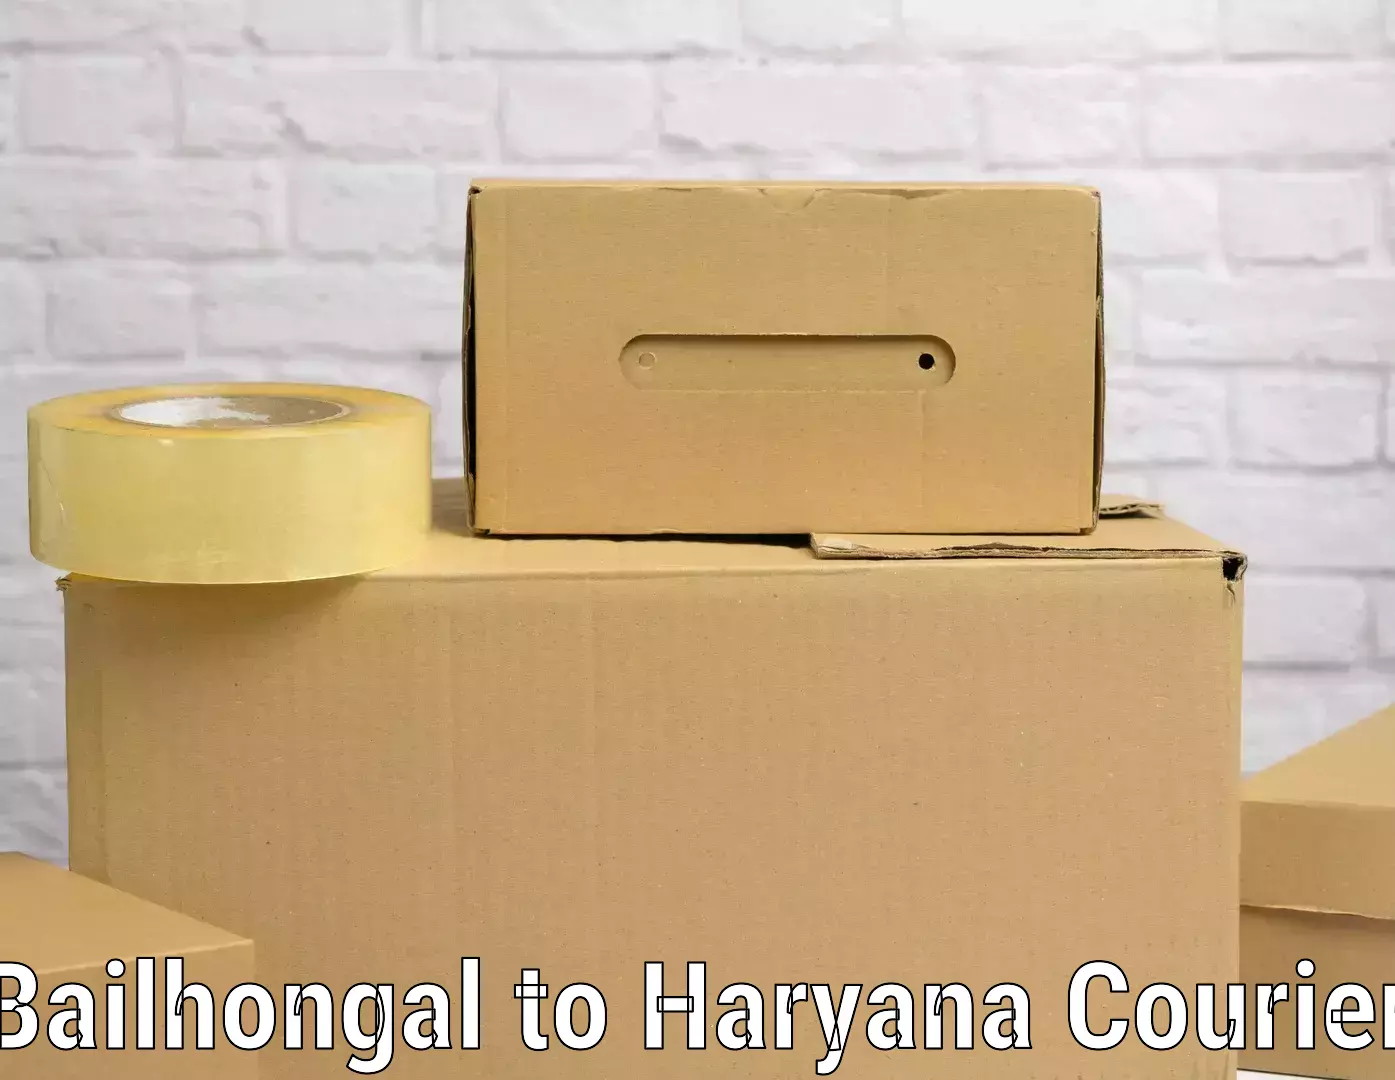 Luggage transport service Bailhongal to Haryana